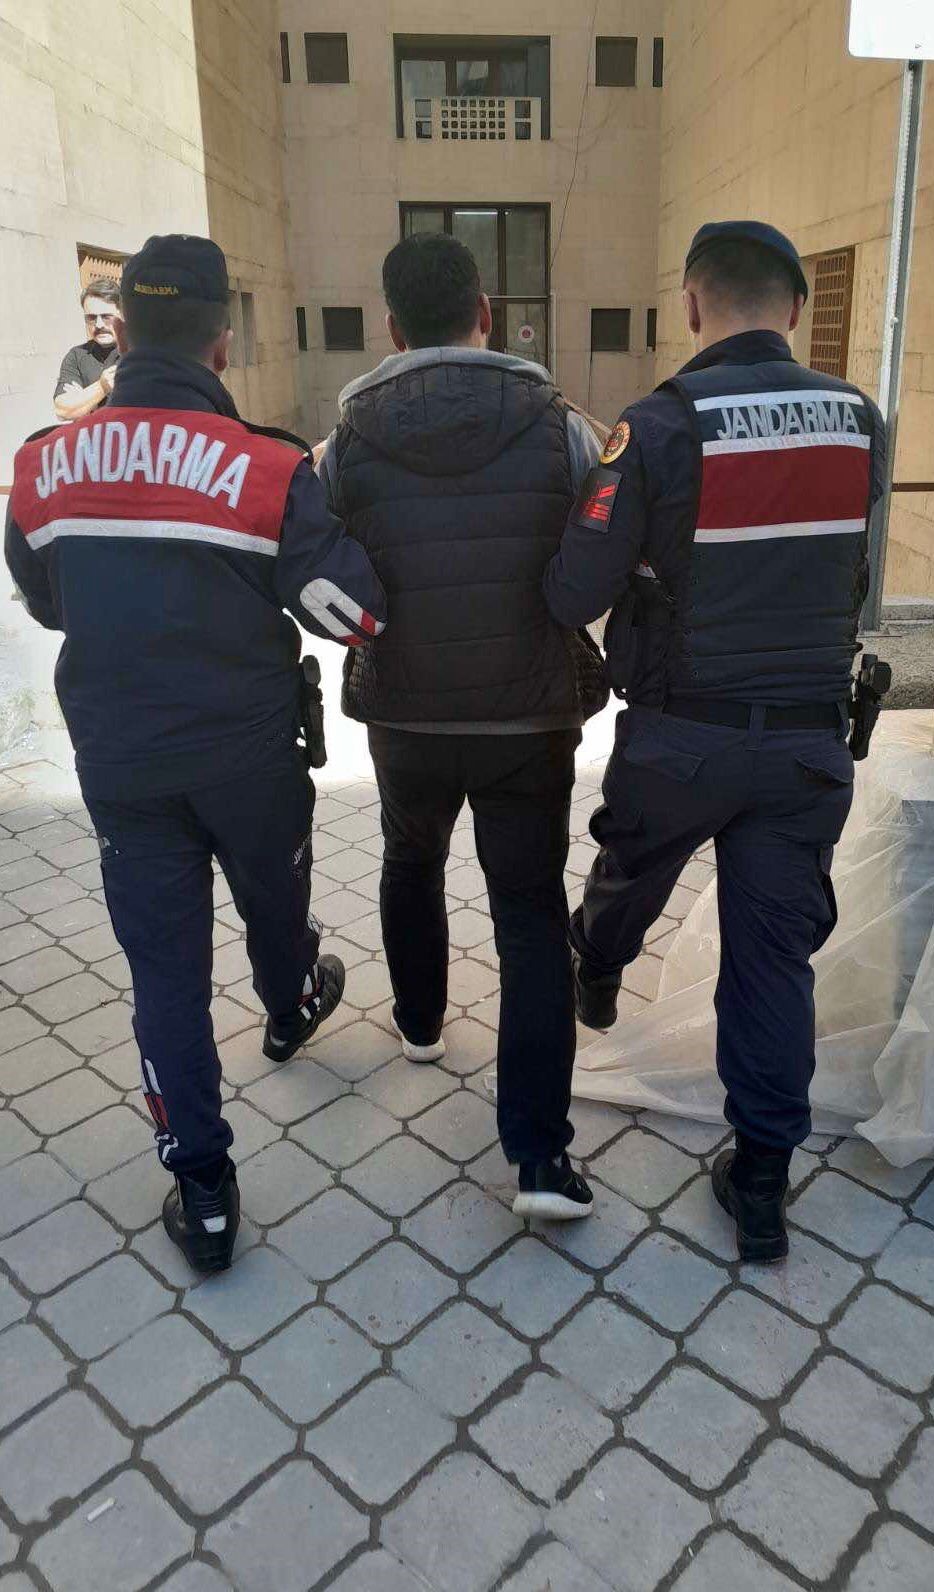 Bursa'da suç makinesi yakalandı